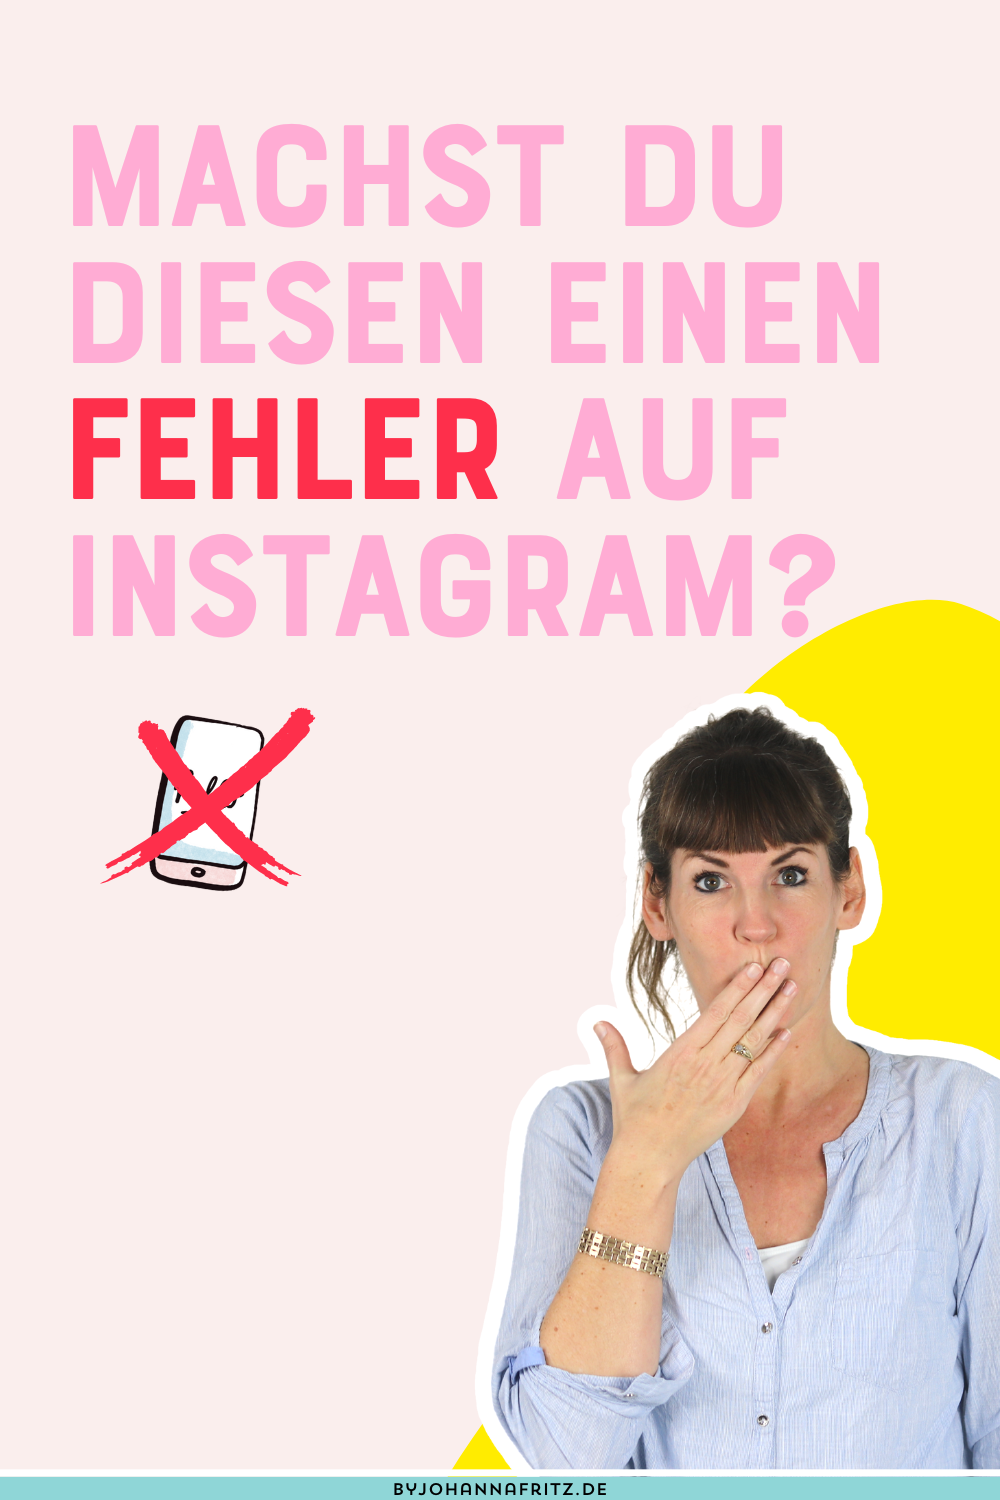 Machst du diesen einen fehler auf Instagram? By Johanna Fritz